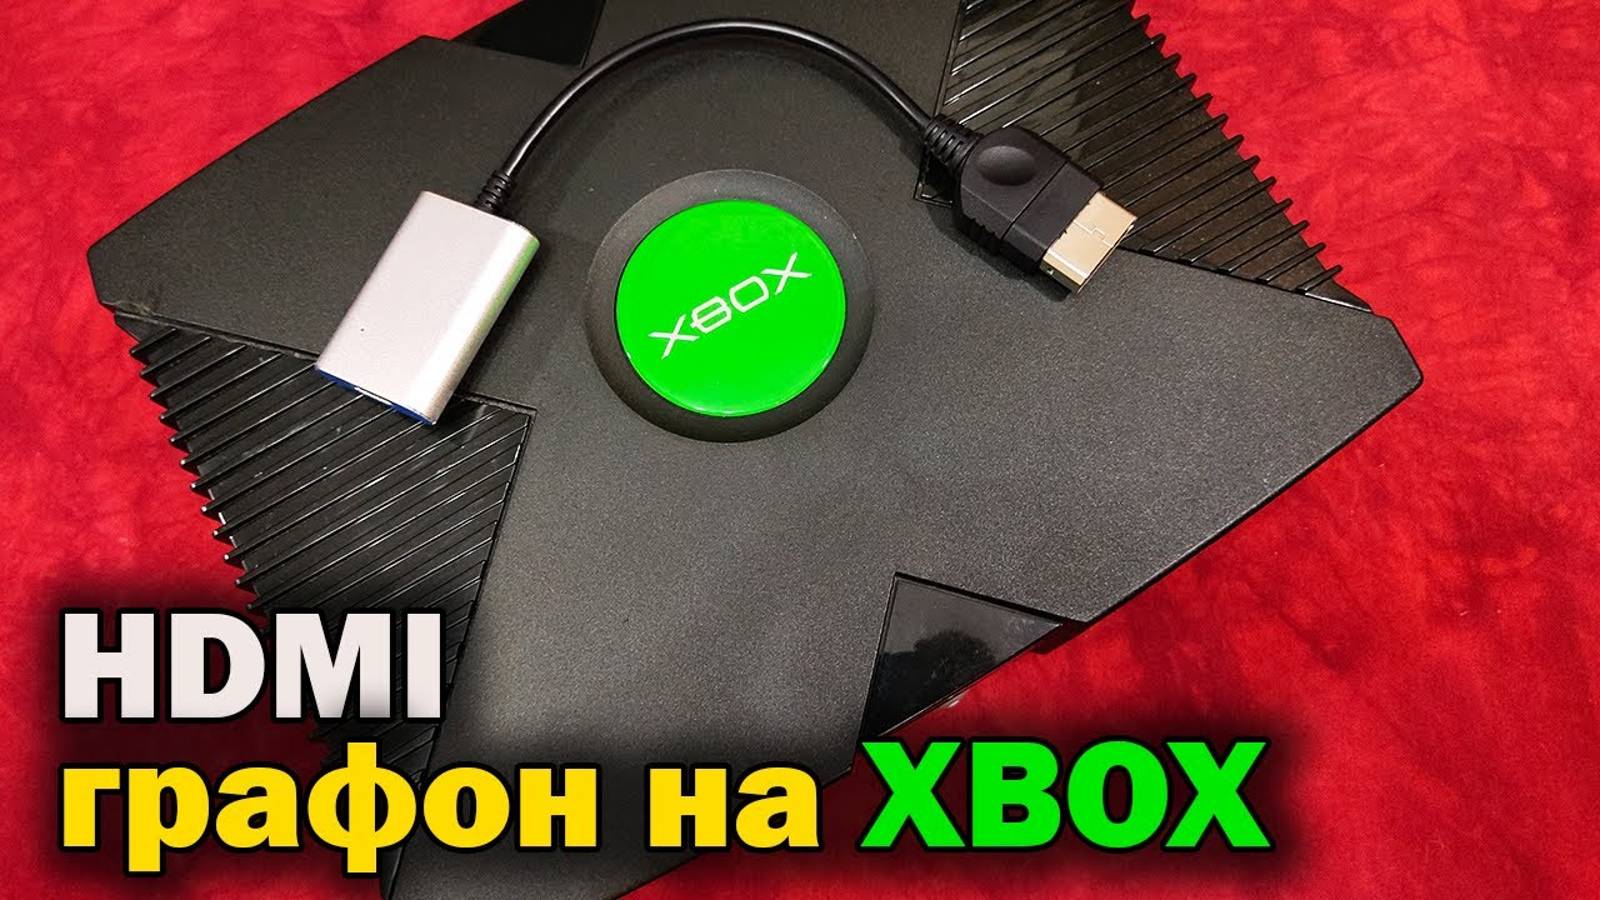 Xbox Original HDMI Adapter - Как подключить XBOX к современному ТВ / Обзор